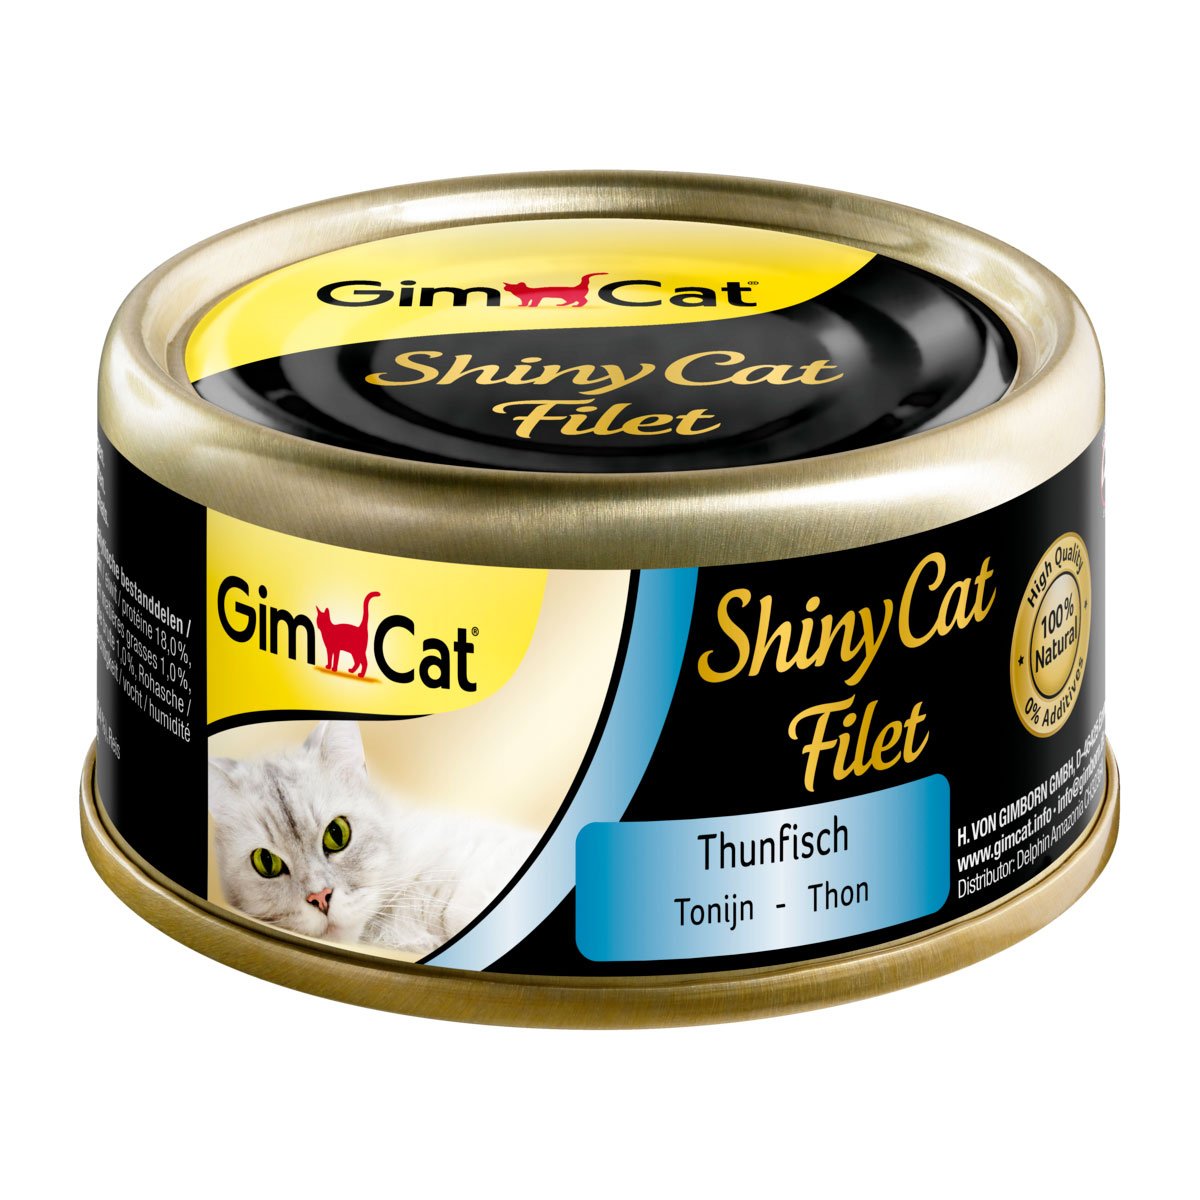 GimCat ShinyCat Filet Thunfisch 6x70g von Gimcat